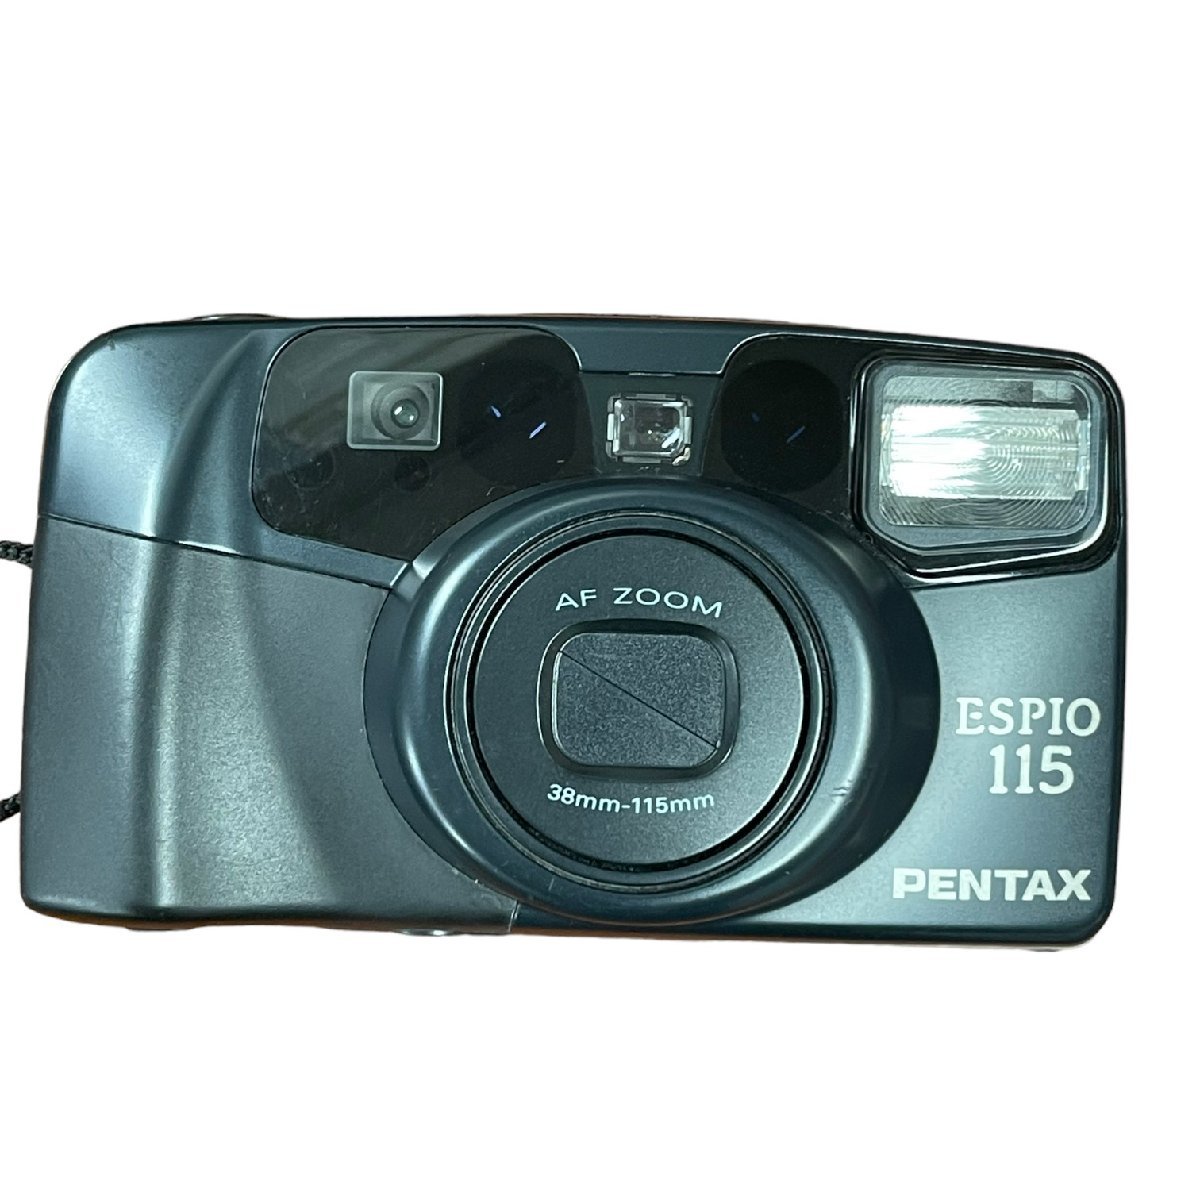 中古品 PENTAX ペンタックス フィルム カメラ コンパクト ESPIO エスピオ 115 レトロ RETRO CAMERAAF ZOOM 38-115mm 動作未確認 A44545REの画像2